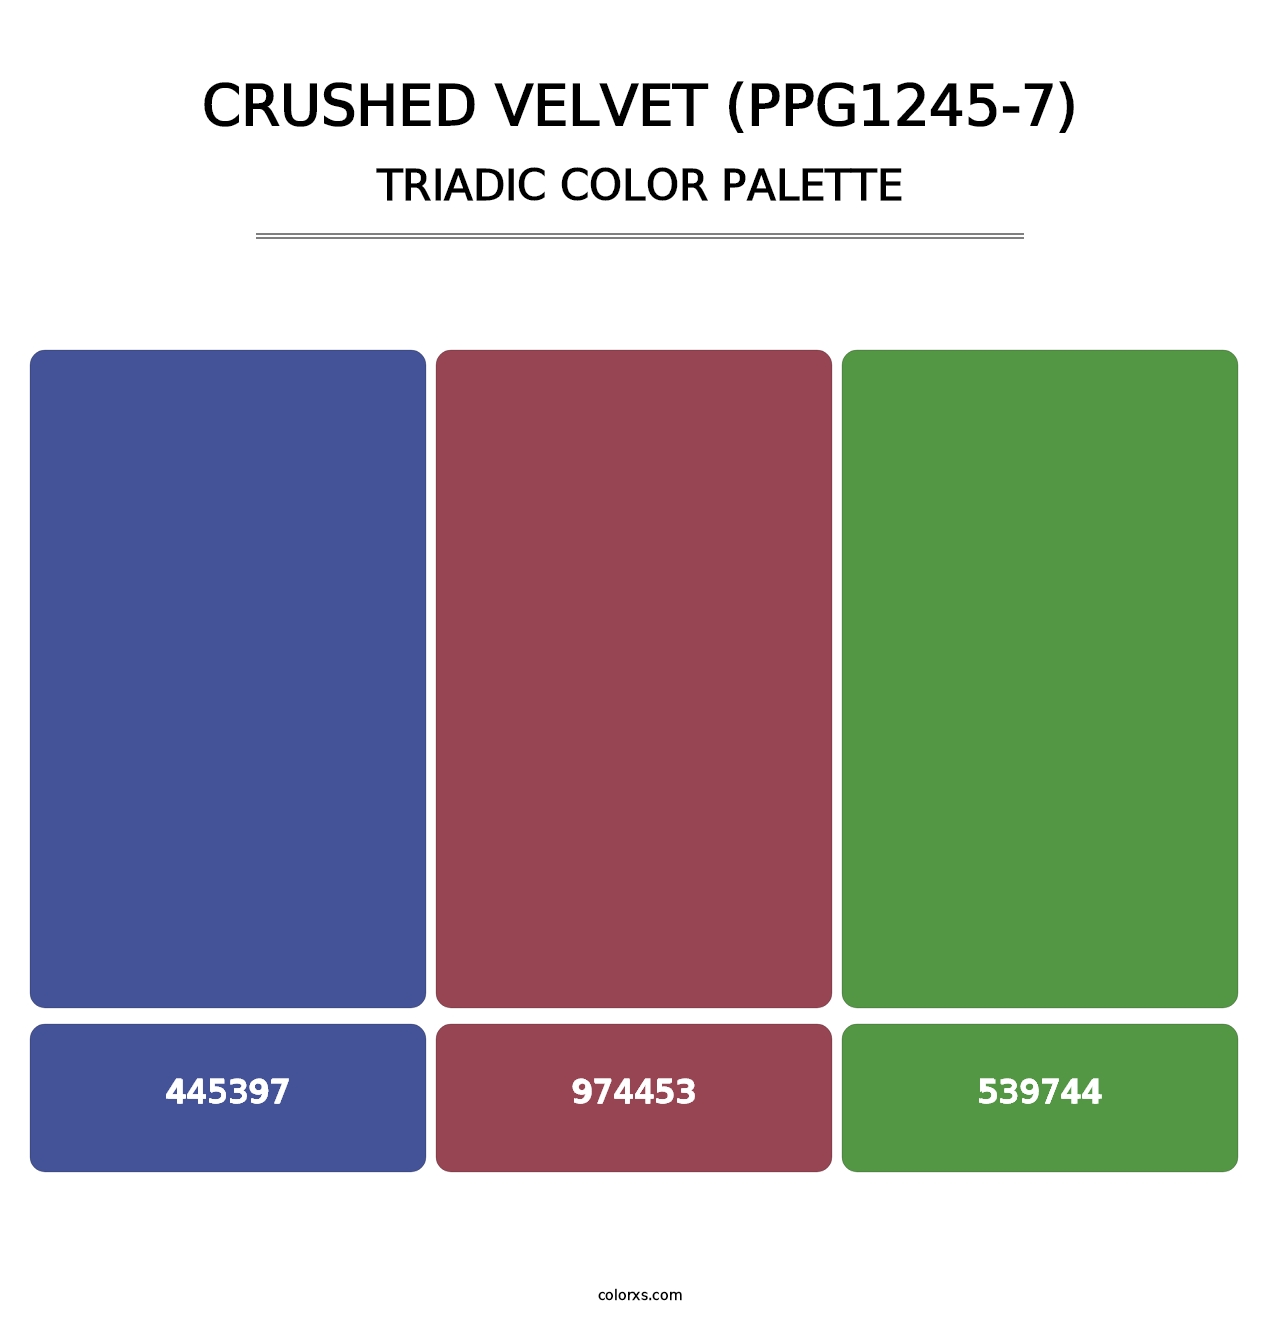 Crushed Velvet (PPG1245-7) - Triadic Color Palette